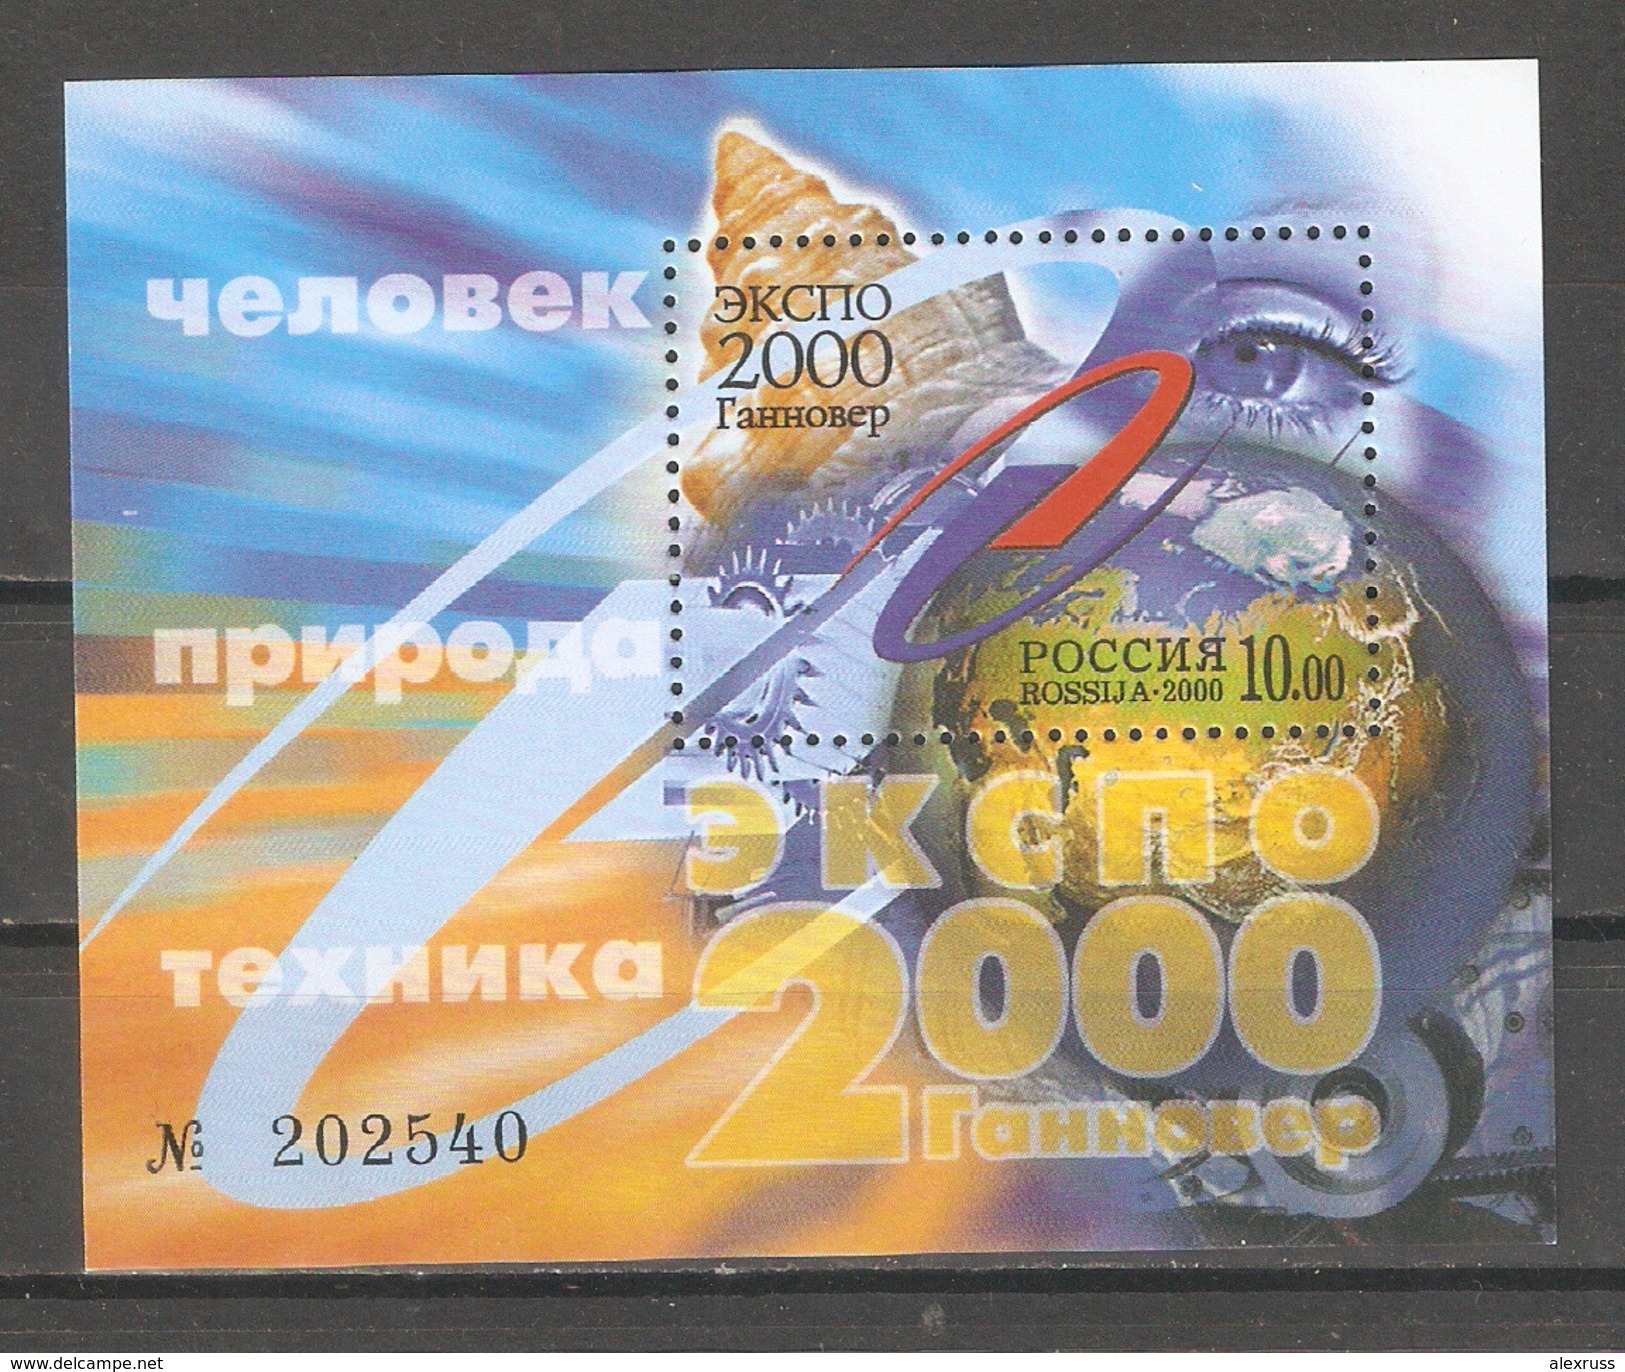 Russia 2000,Souvenir Sheet,EXPO 2000 Hannover,Sc 6590,VF MNH** - 2000 – Hannover (Deutschland)